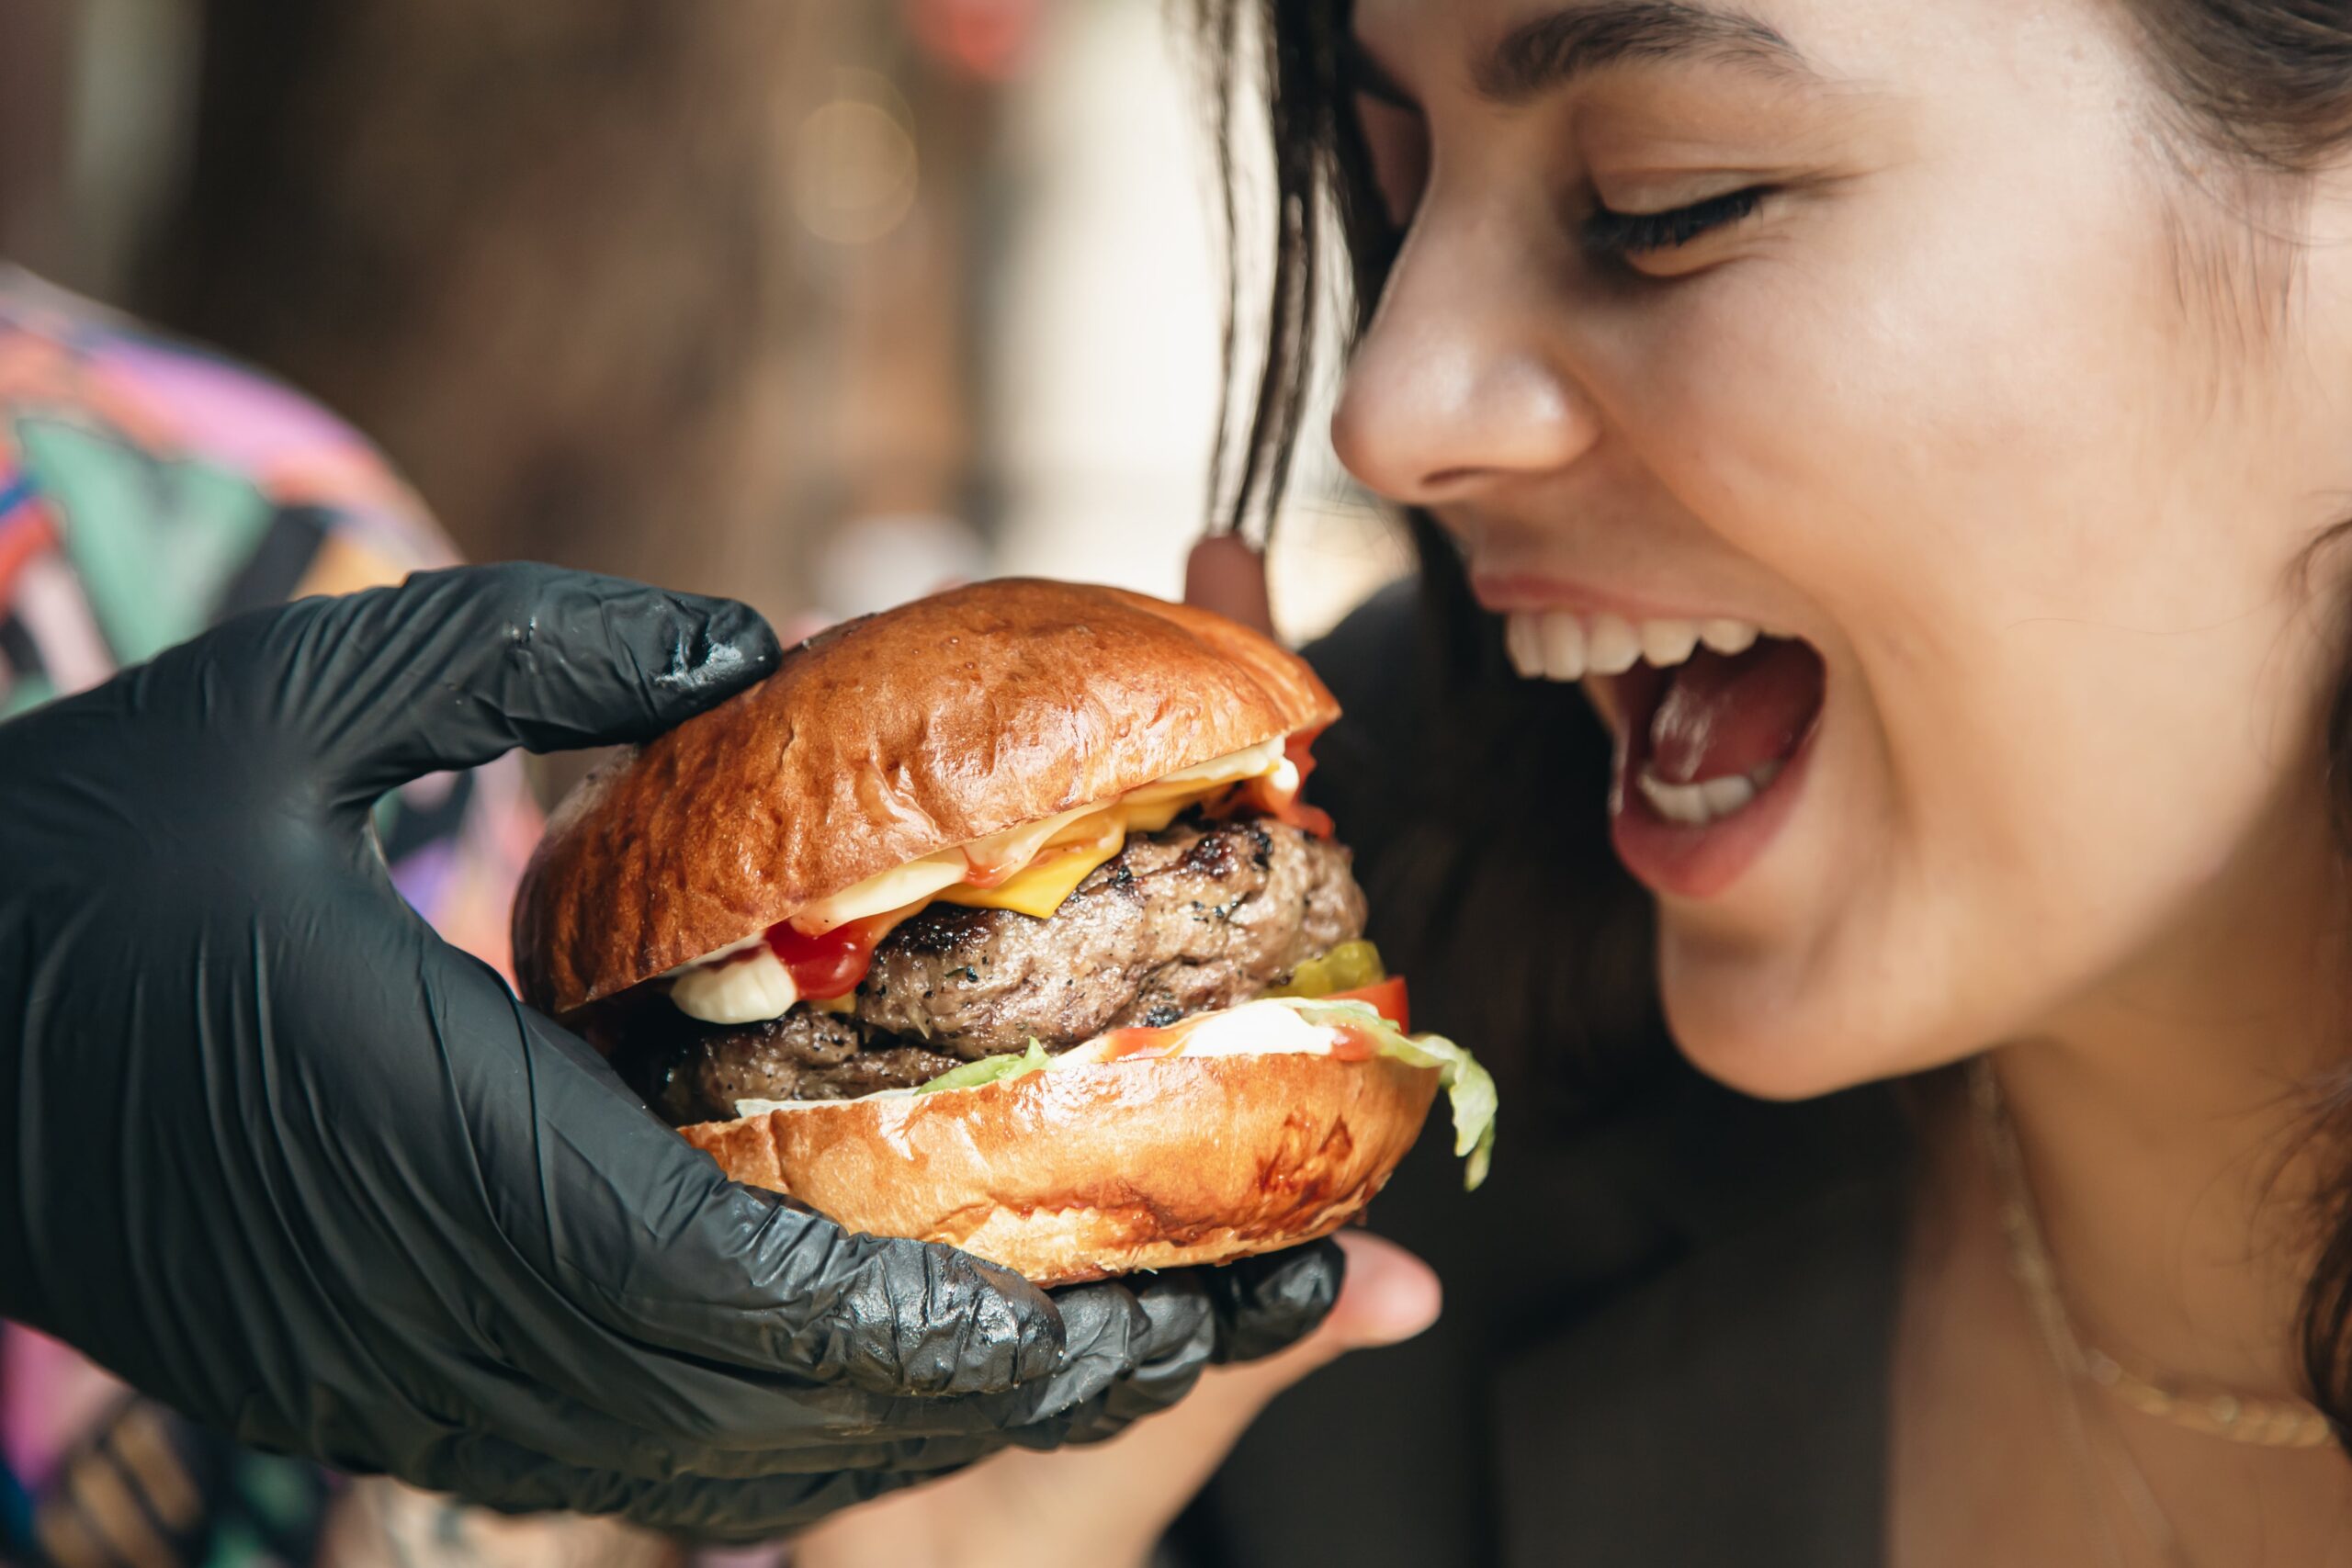 Lire la suite à propos de l’article Les compétences requises pour devenir restaurateur spécialisé en burger